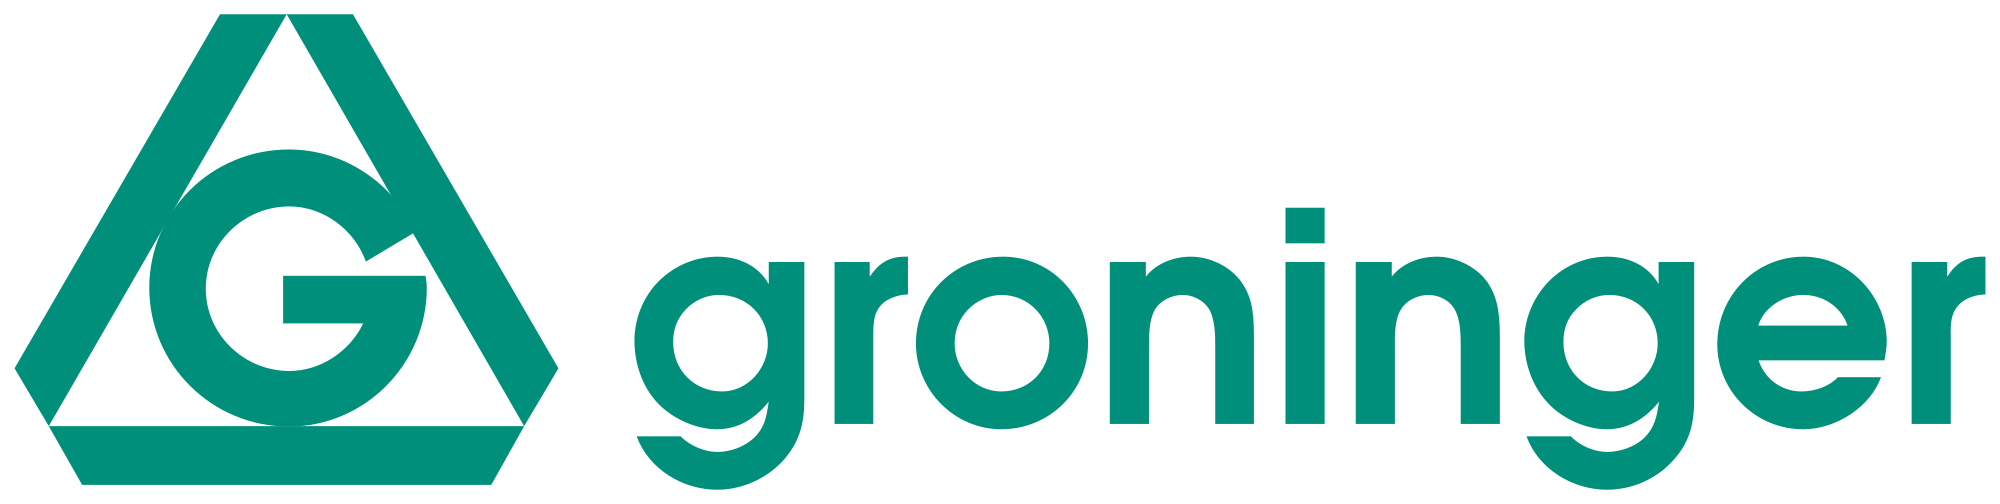 Groninger & CO. GmbH